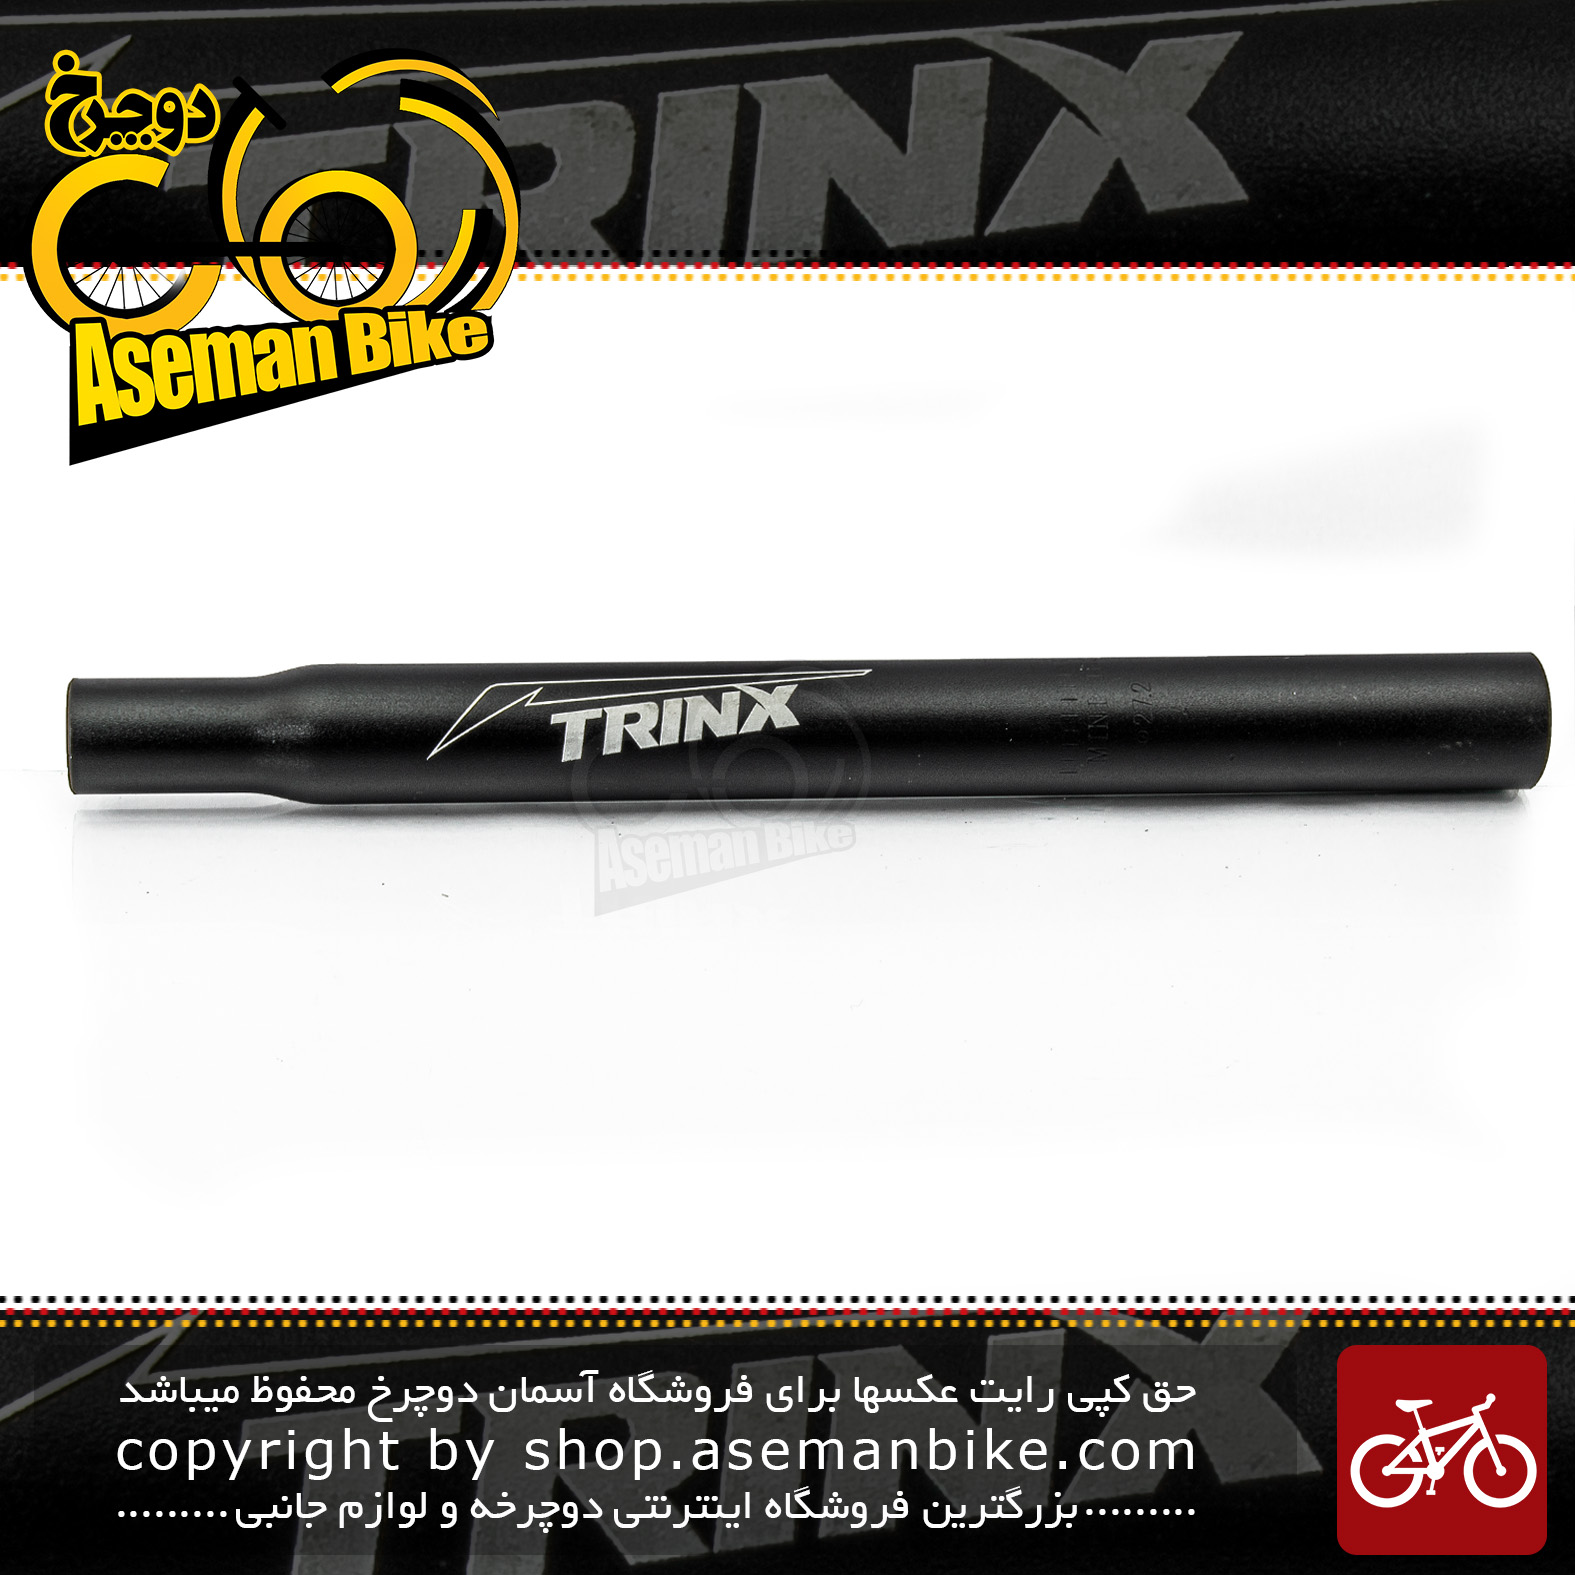 لوله زین دوچرخه ترینکس قطر 27.2 میلیمتر طول300 میلیمتر TRINX Bicycle Seat-Post 27.2 mm  Diameter, 300 mm Length